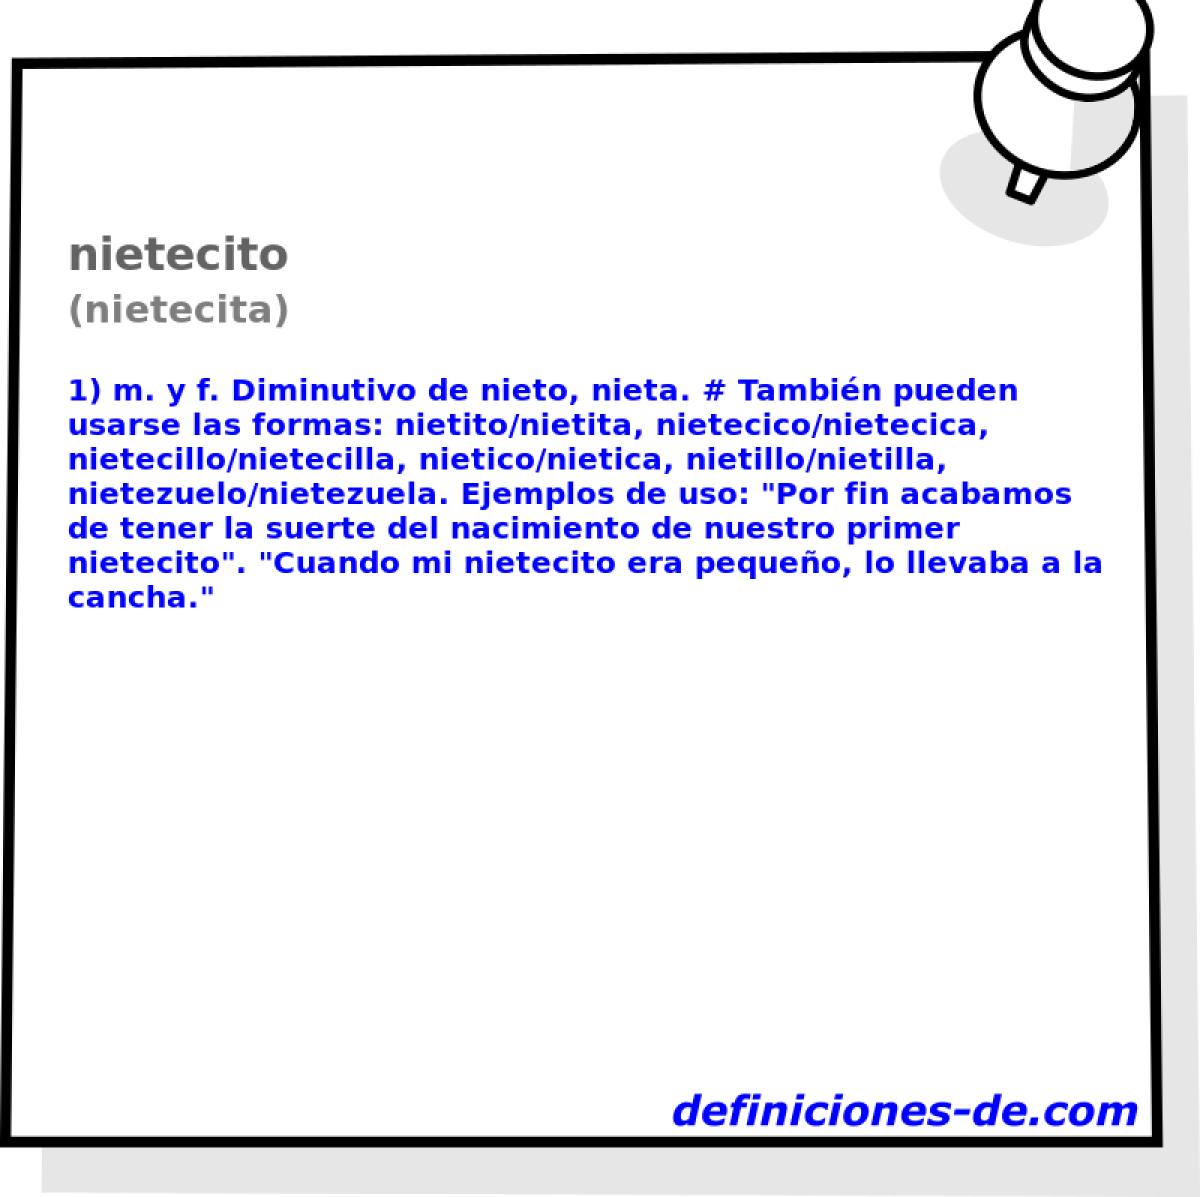 nietecito (nietecita)